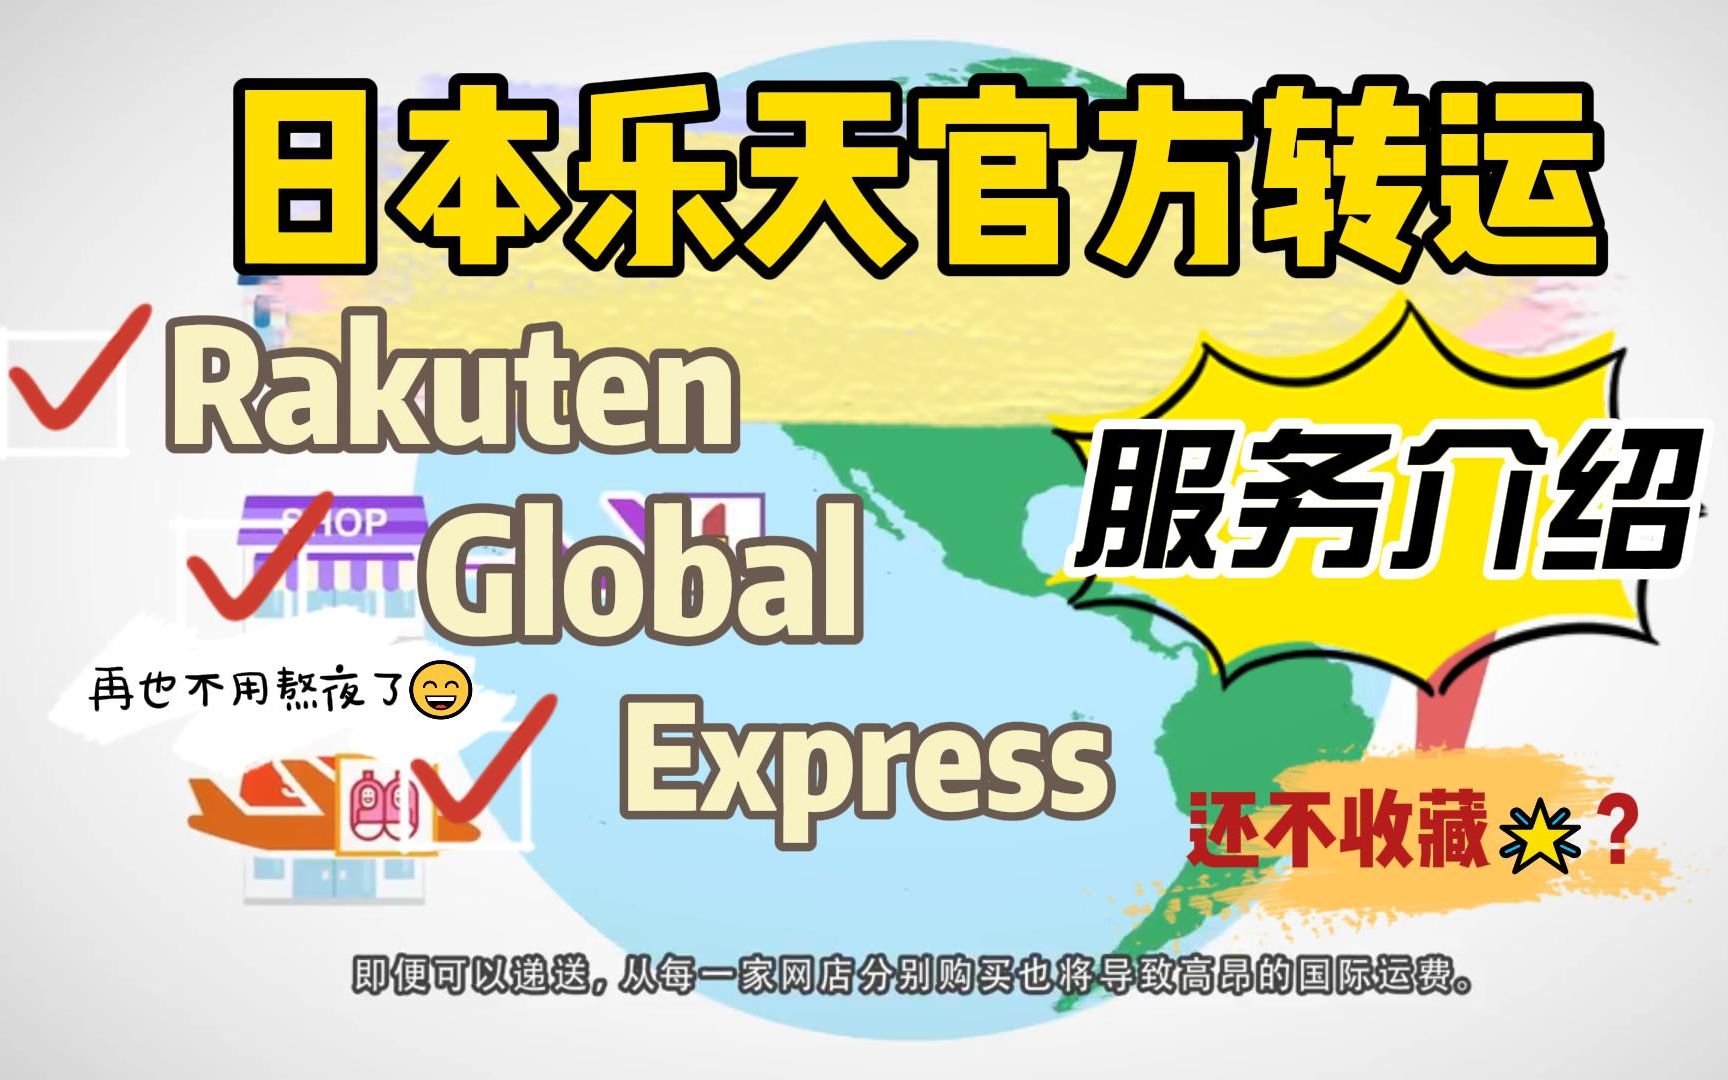 日本乐天官方转运Rakuten Global Express服务介绍.